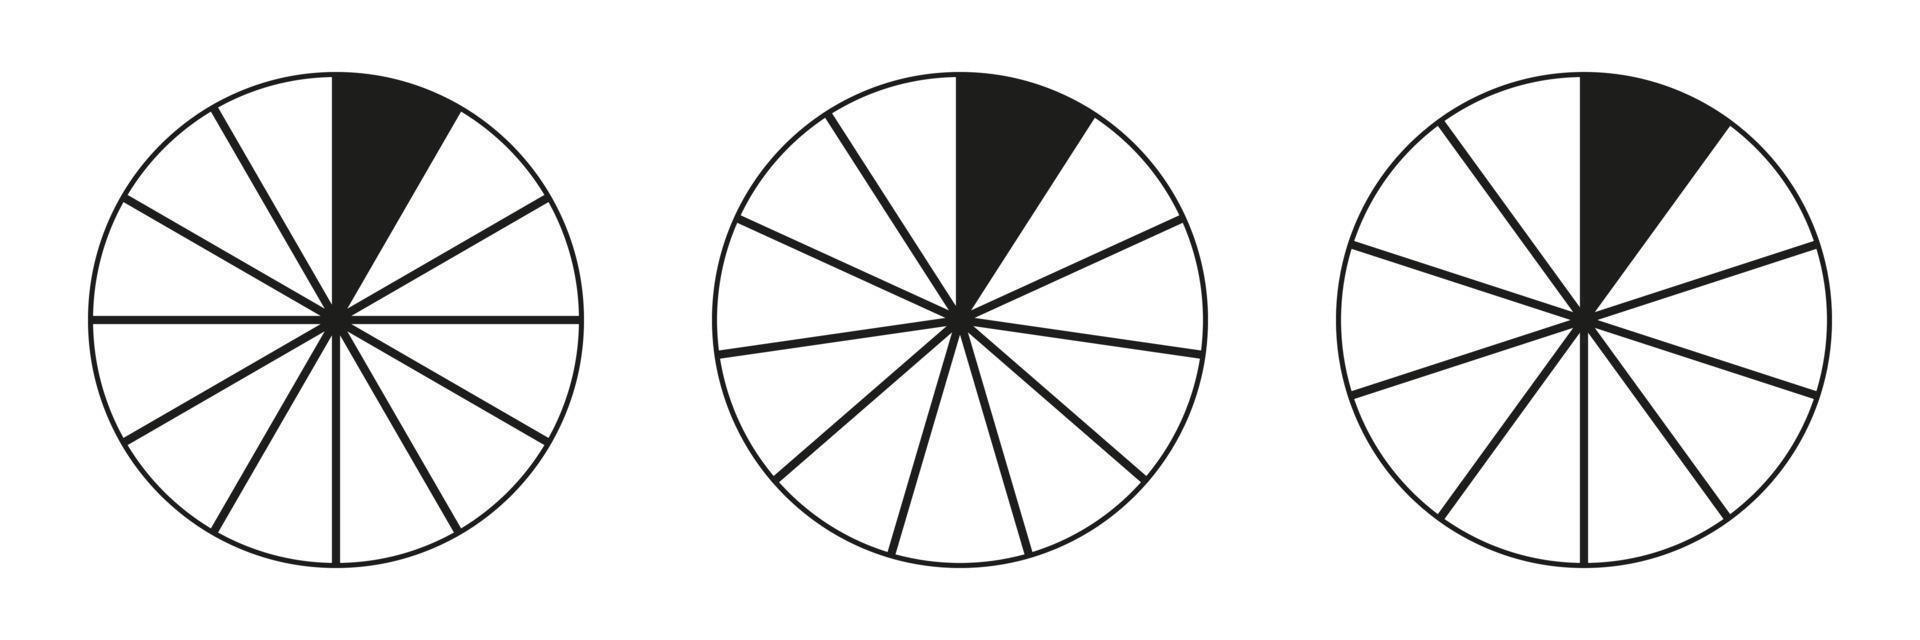 segmentario cartas recopilación. muchos número de sectores dividir el circulo en igual partes. contorno negro Delgado vector gráficos. tarta cartas colocar.